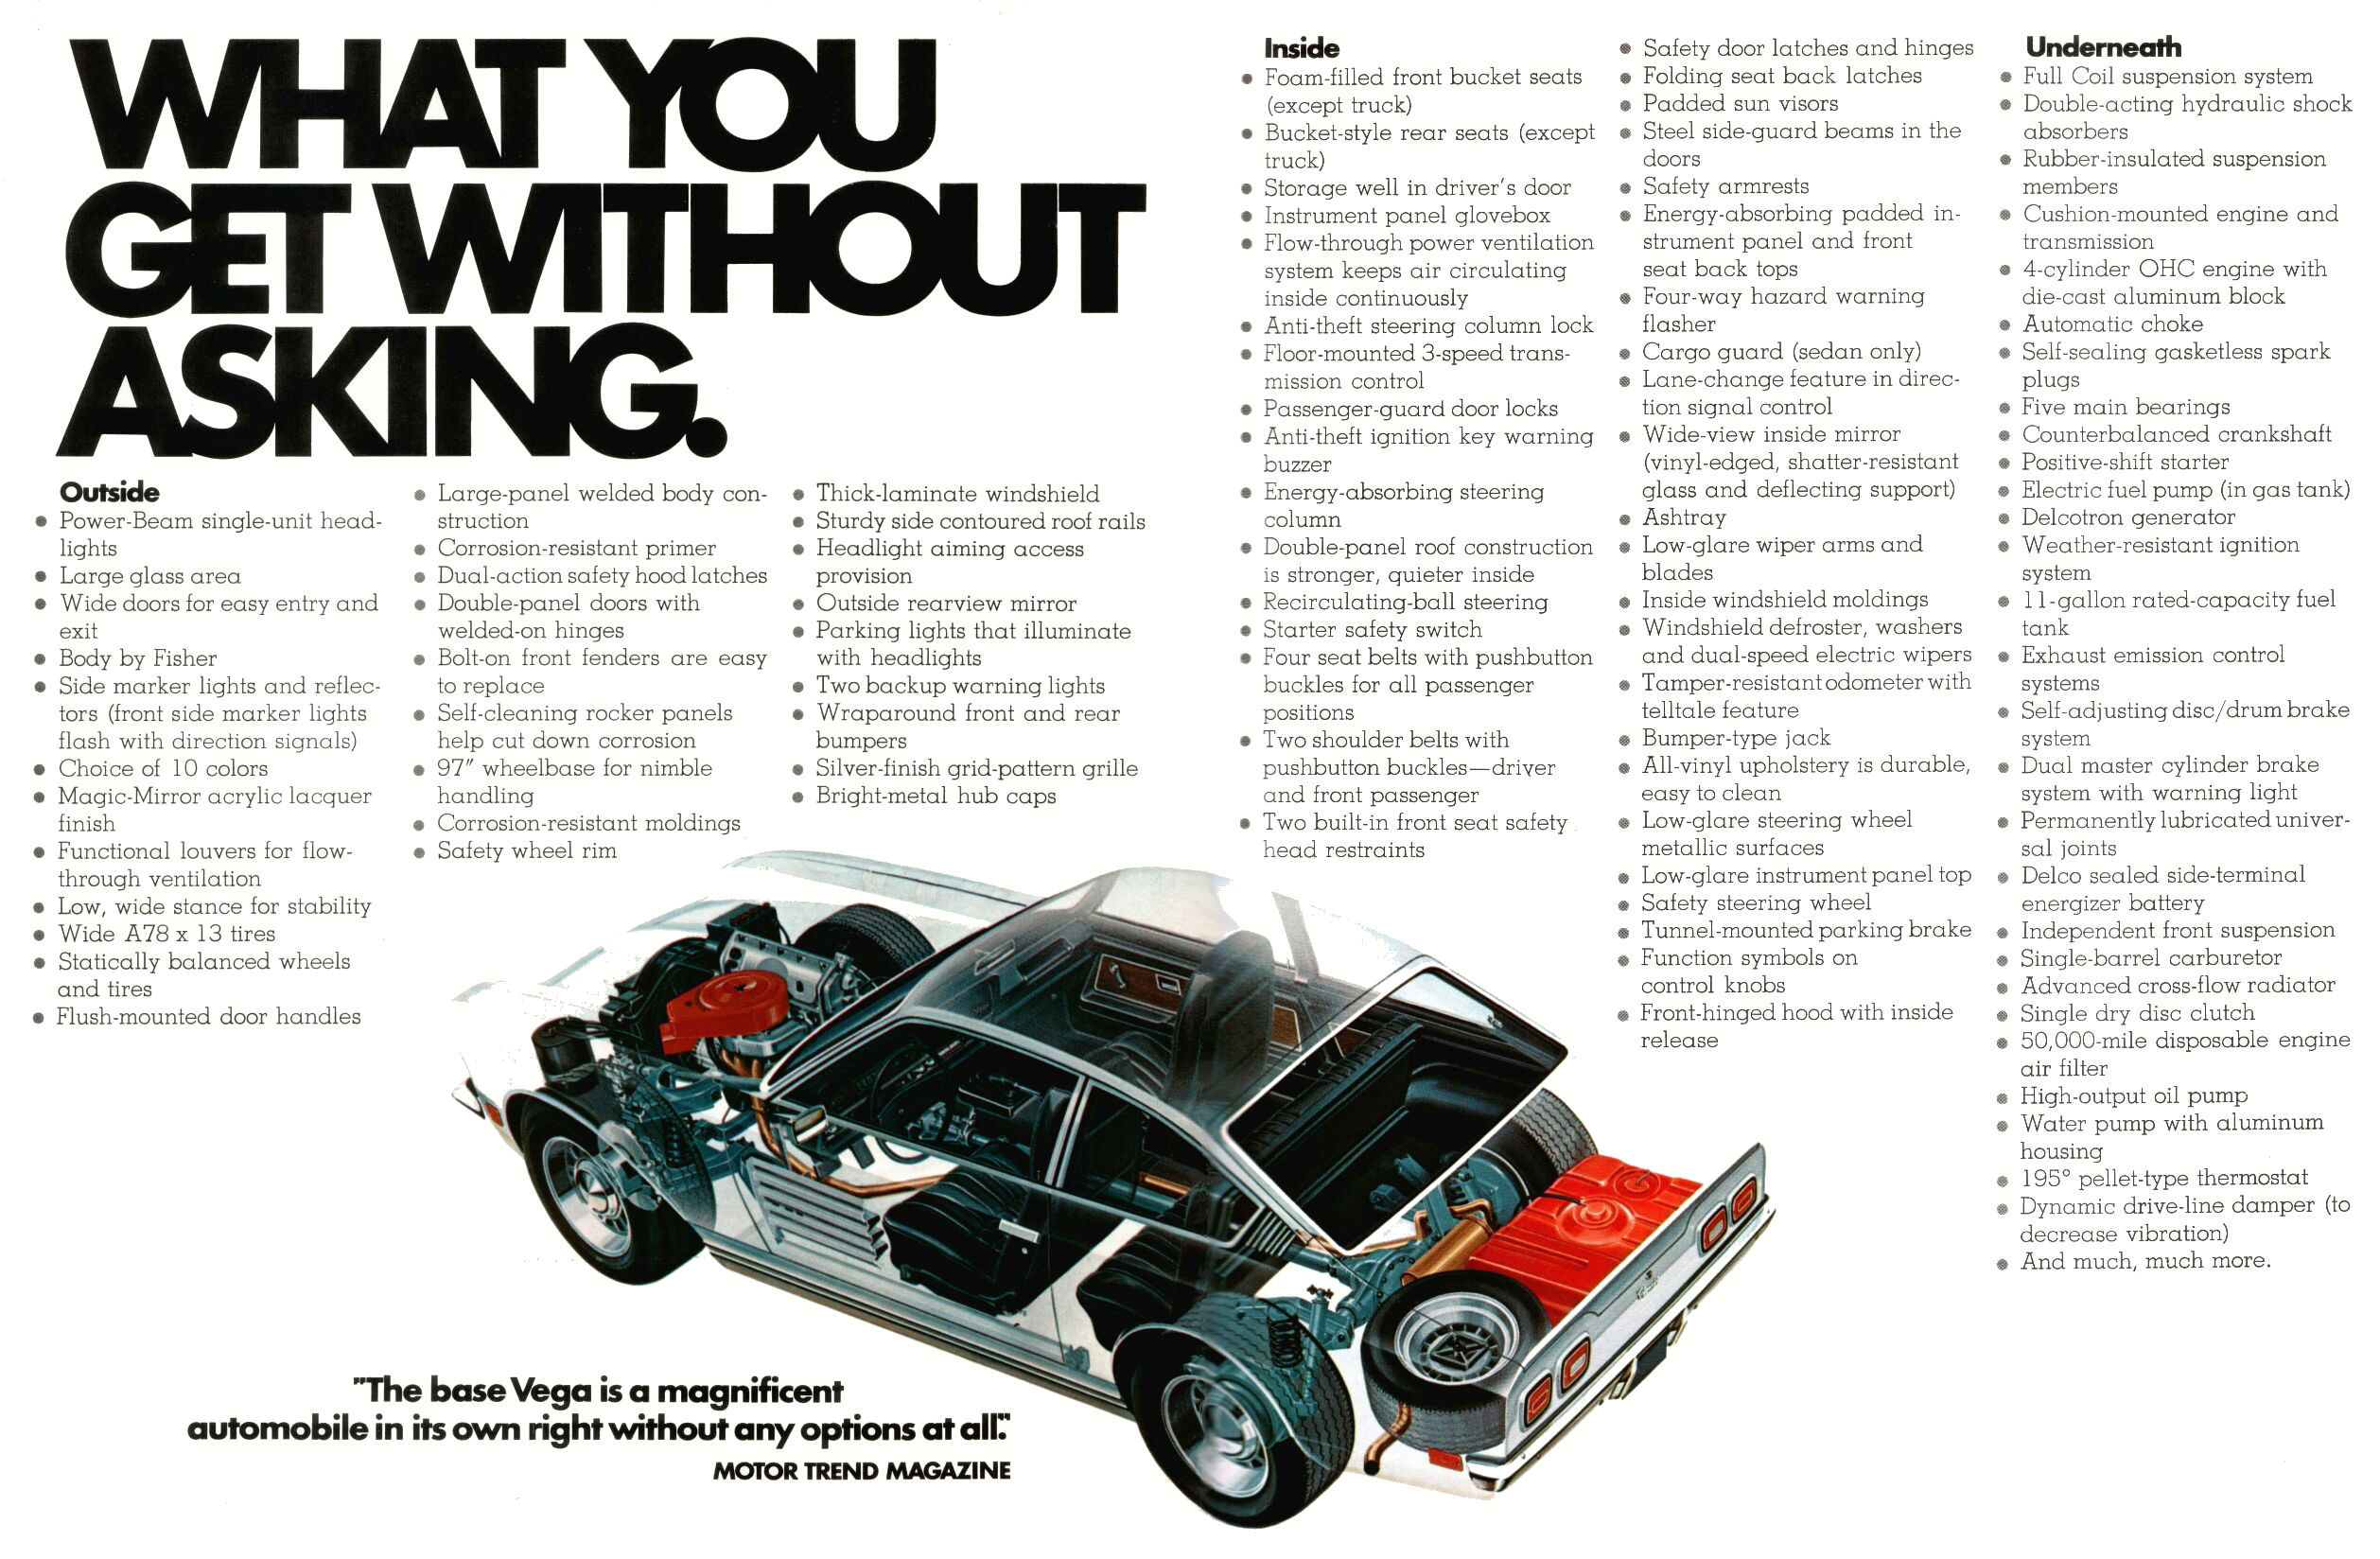 1972 Chevrolet Vega-12 amp 13